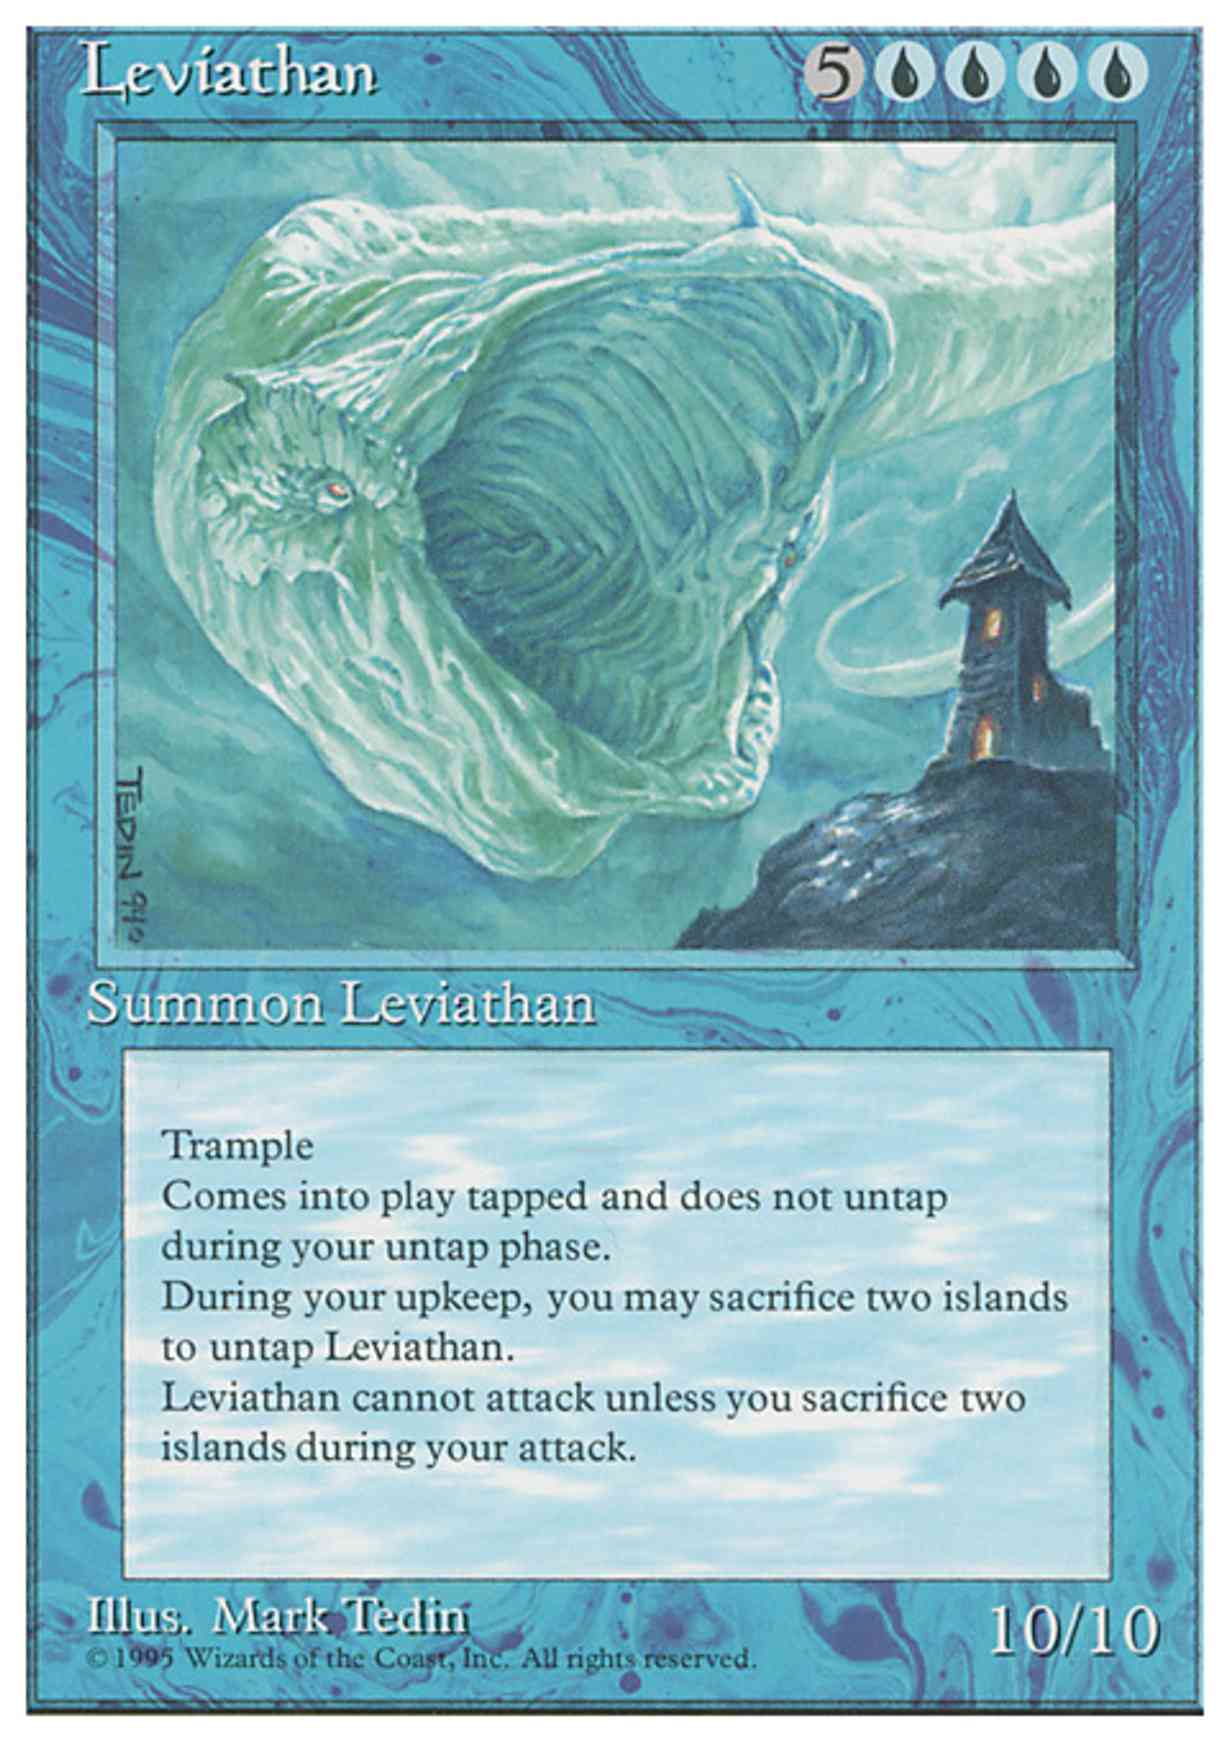 Leviathan magic card front